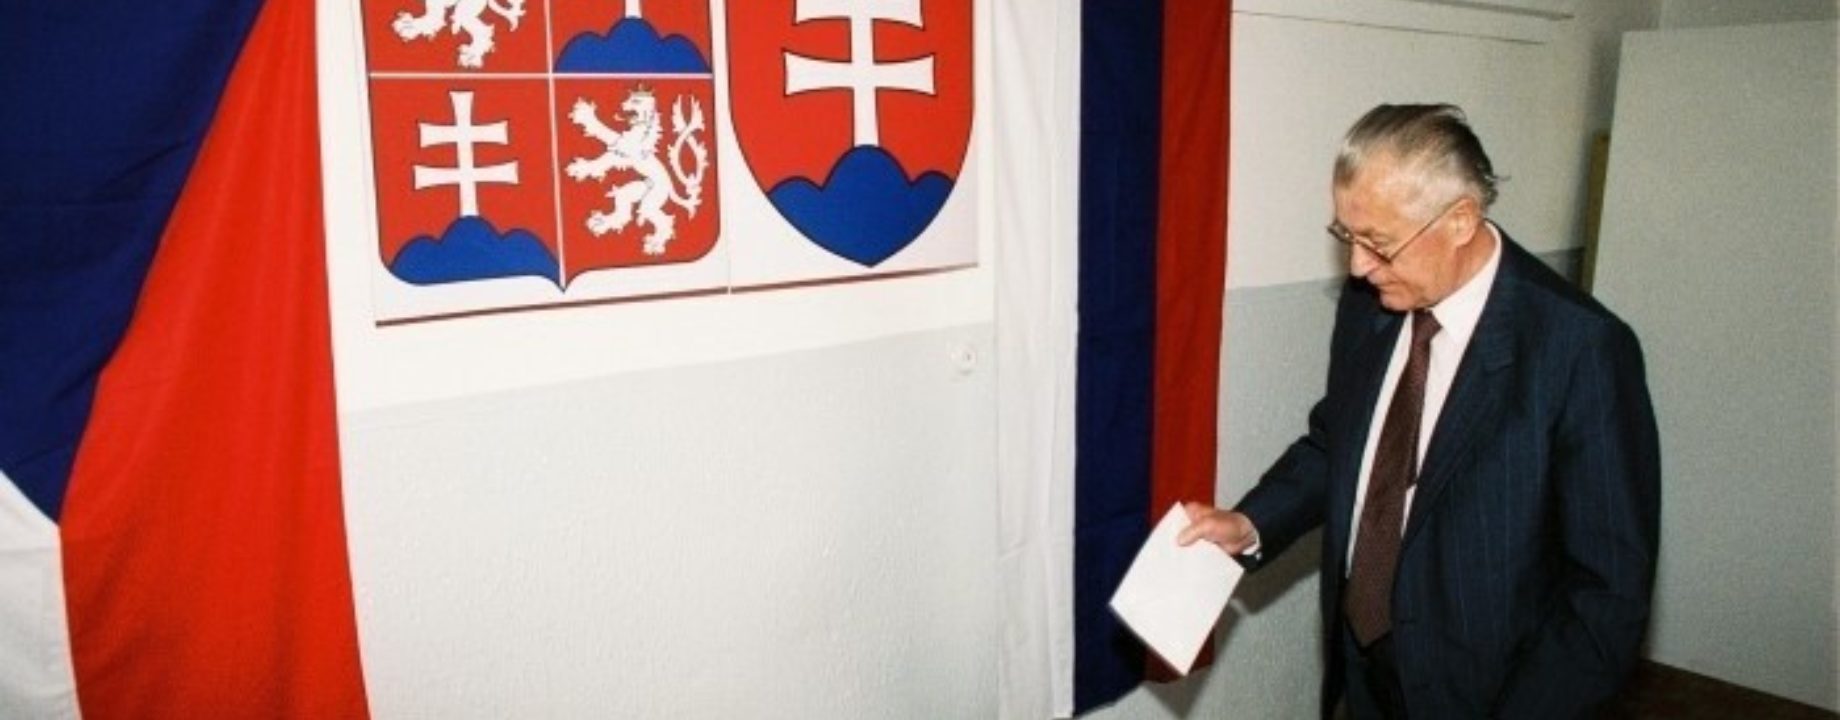 Volby 1992 federacia tasr